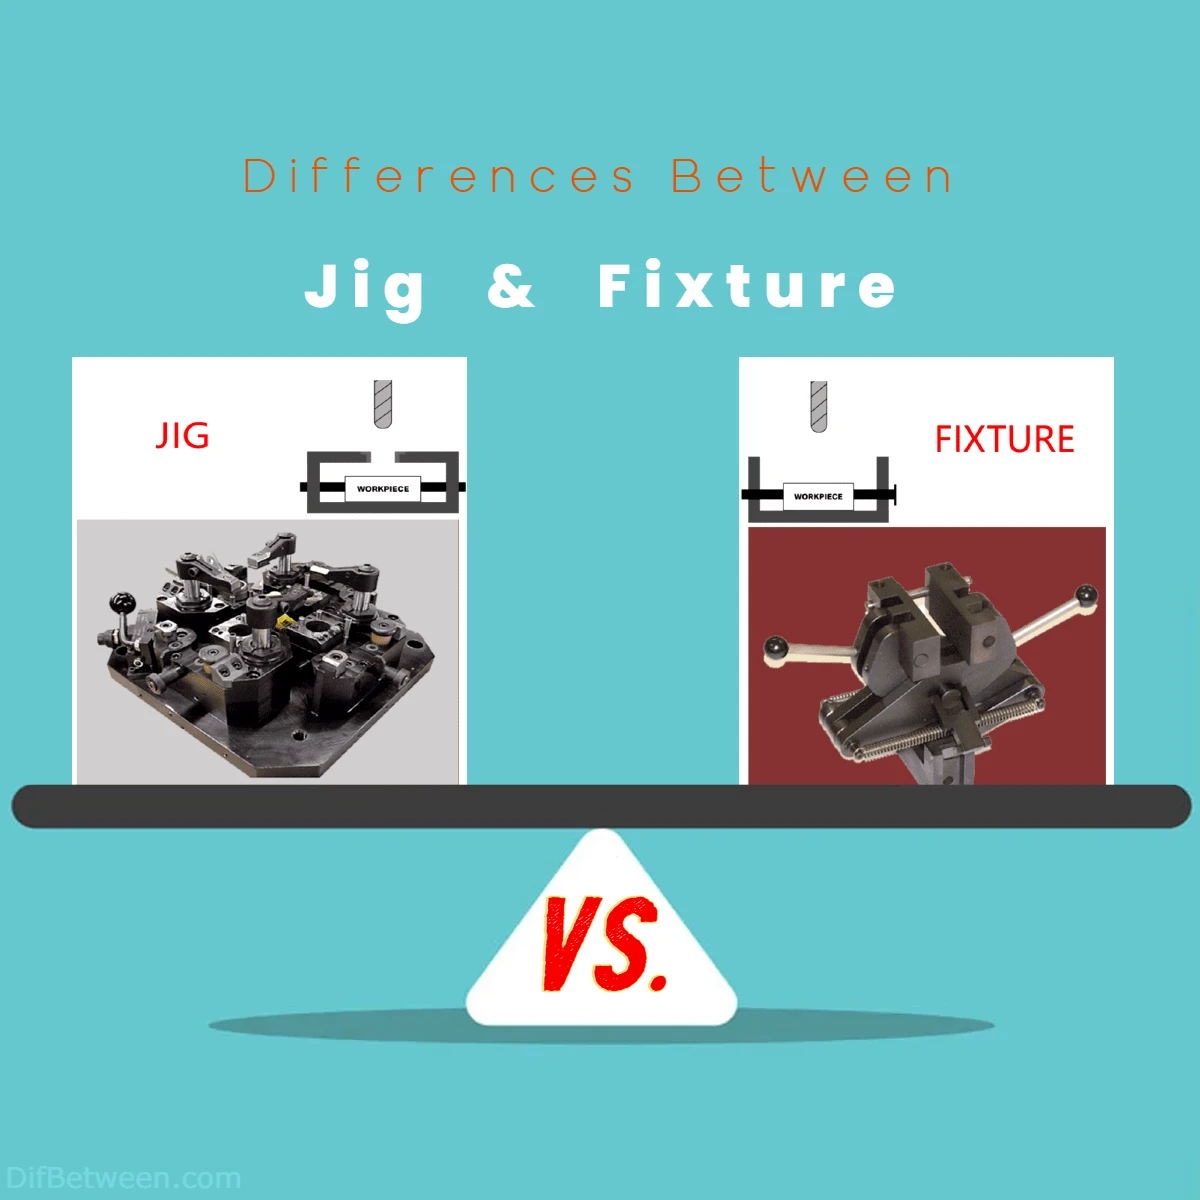 Differences Between Jig vs Fixture